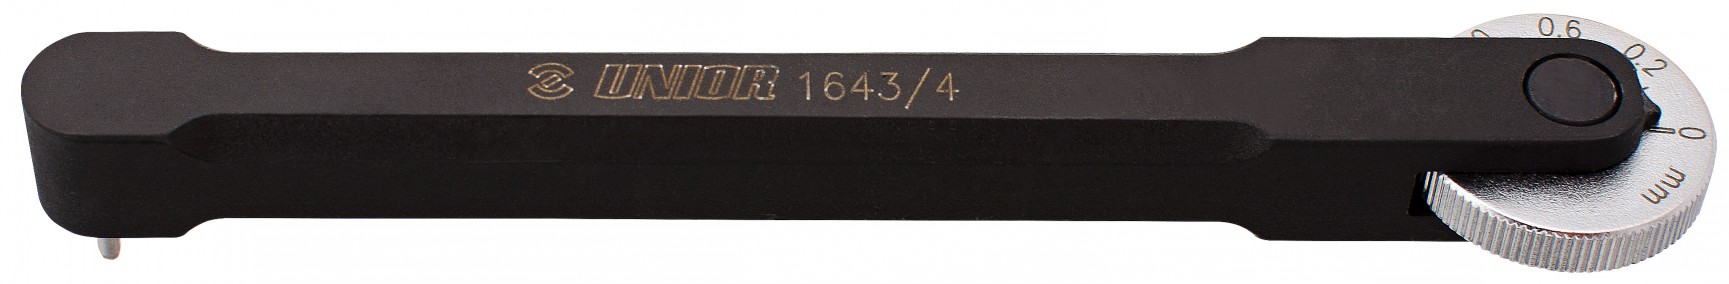 Szerszám Unior 1643/4, láncellenőrző, láncnyúlásmérő professzionális 617170_SZER